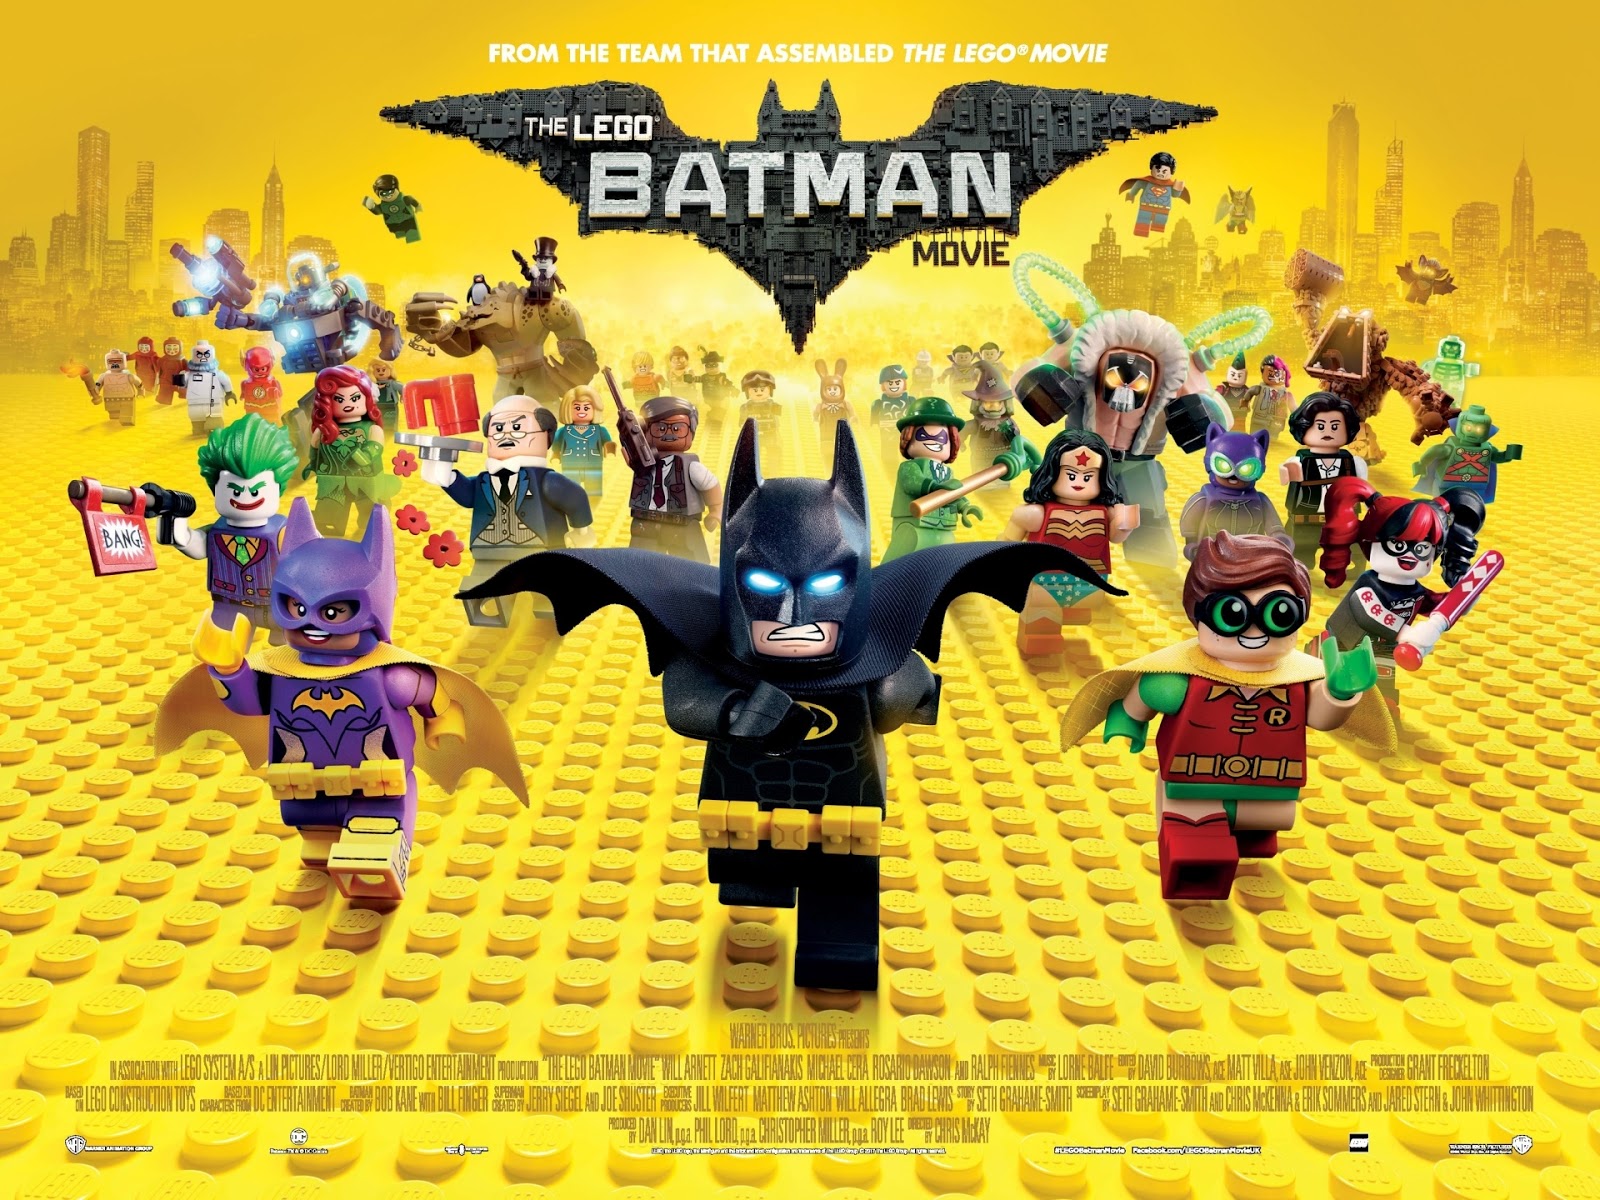 sigte mælk ånd The Brick Castle: The LEGO Batman Movie Review